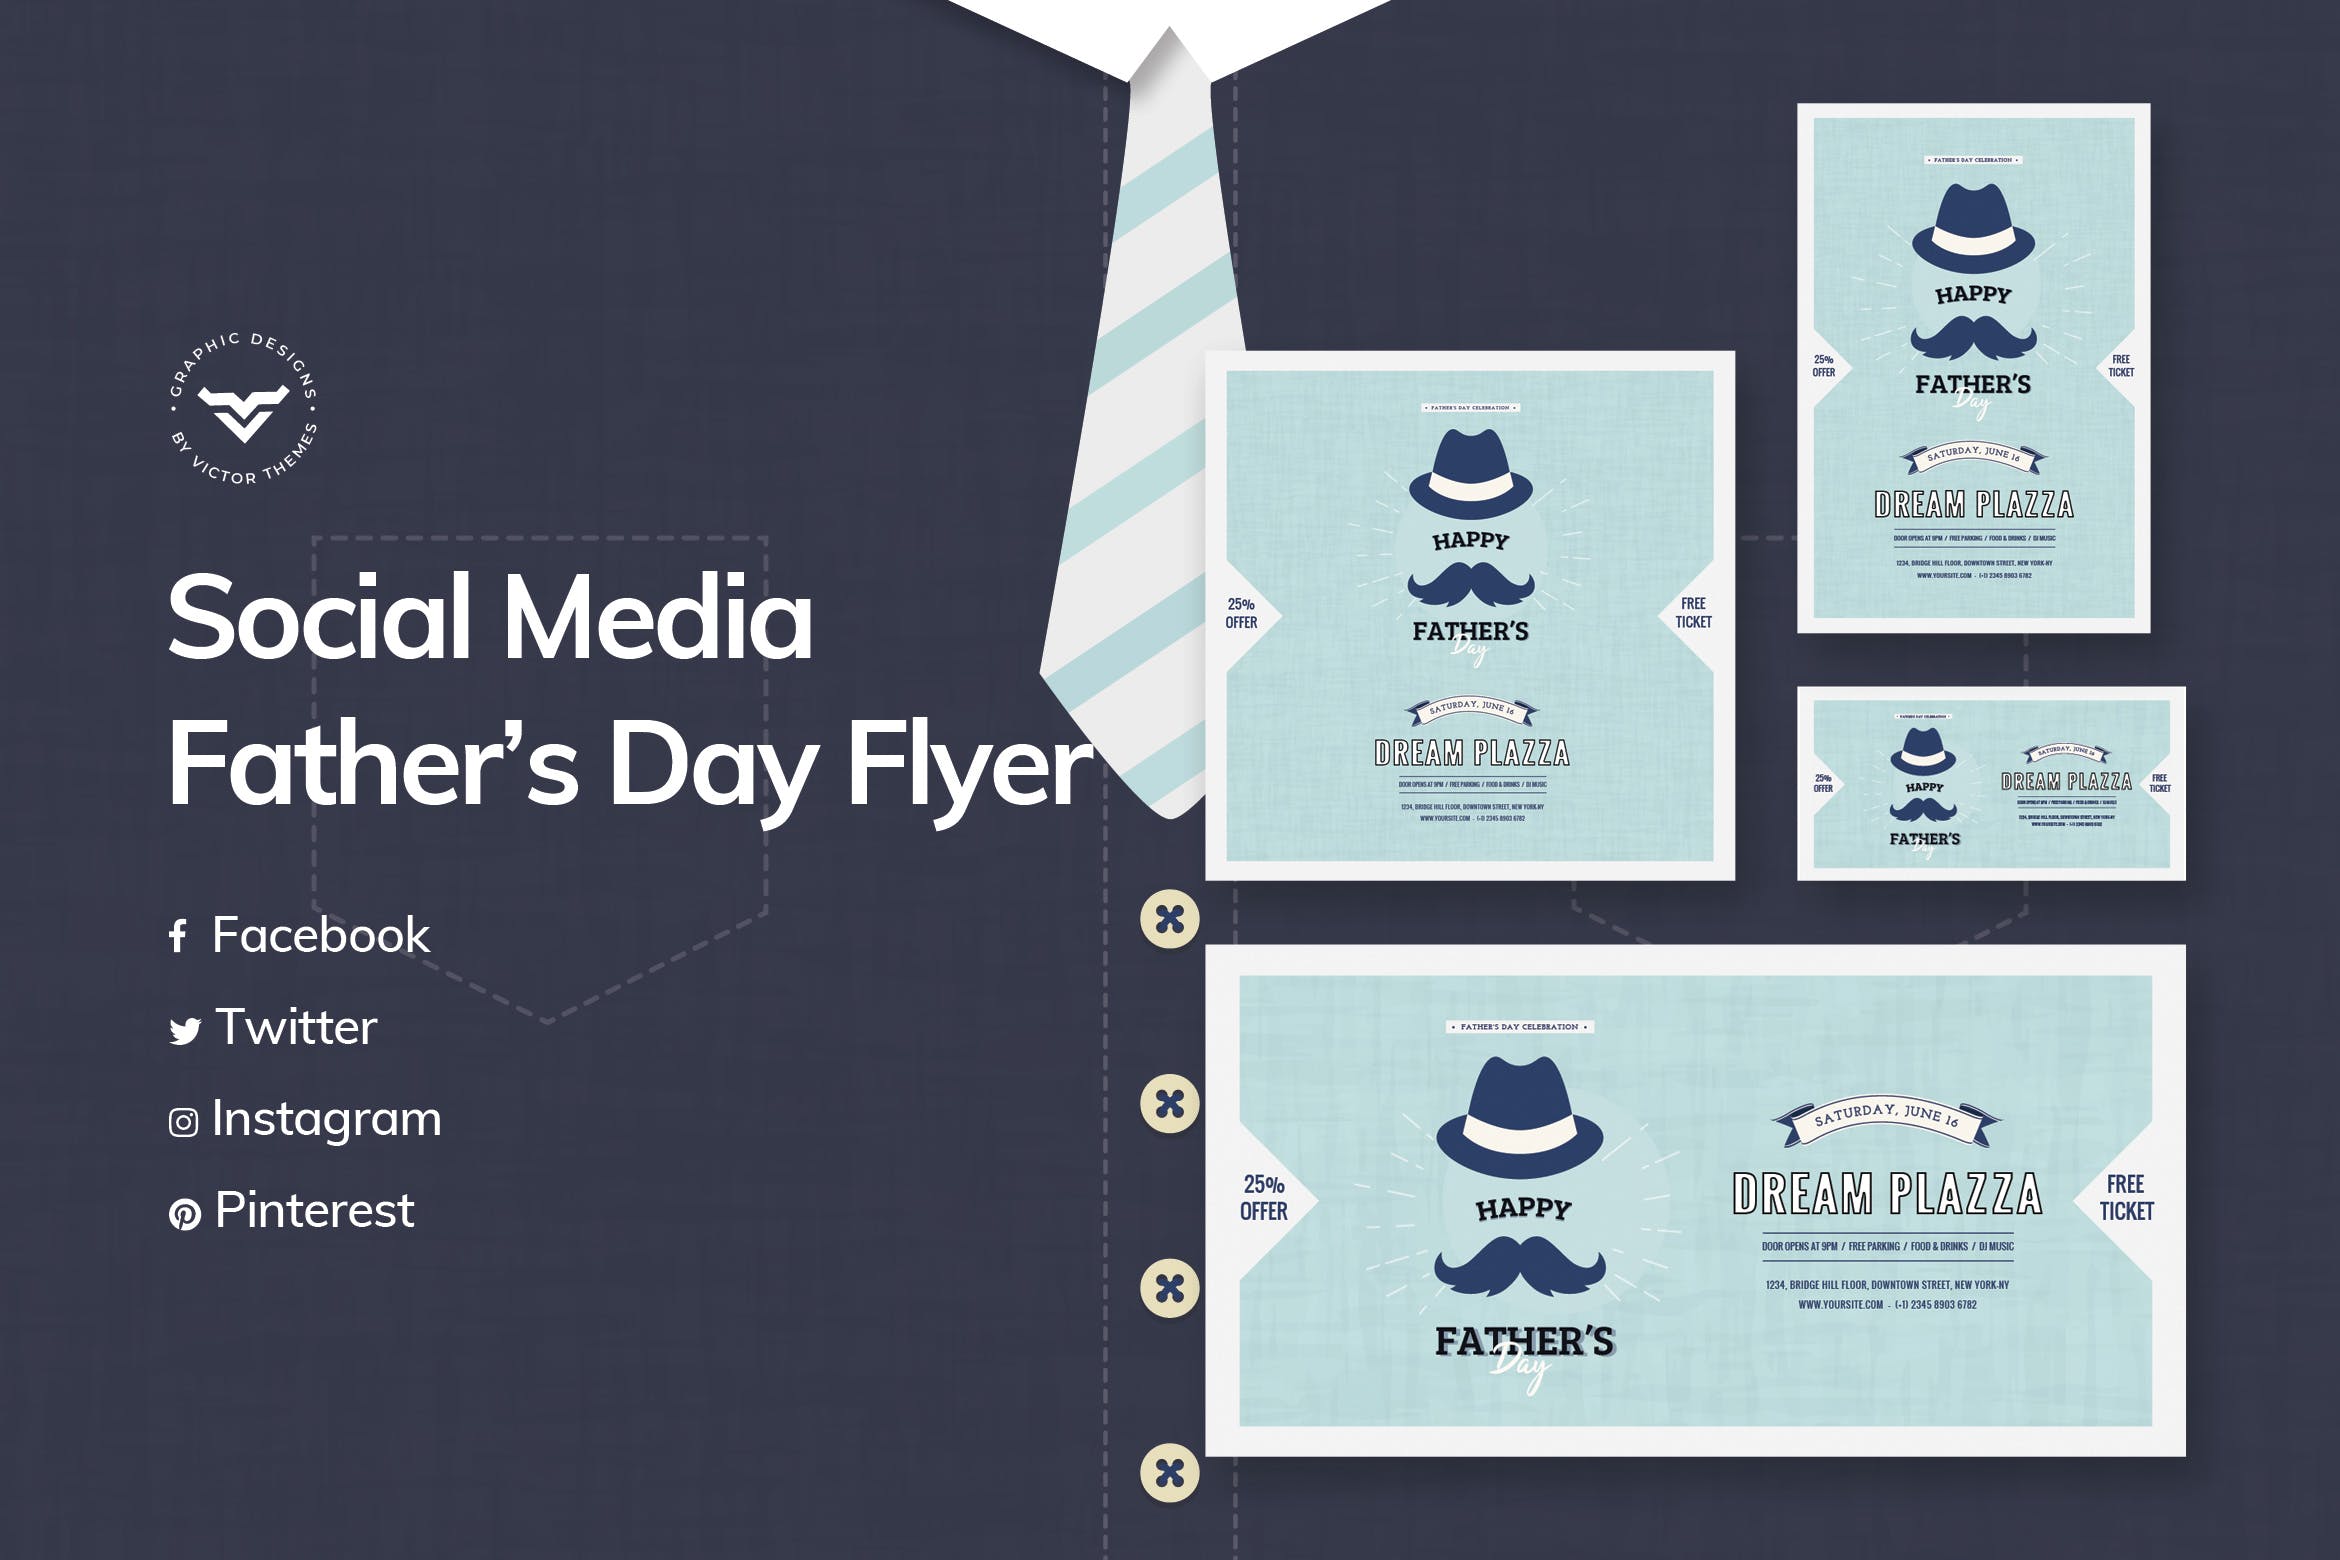 父亲节主题社交媒体广告设计模板第一素材精选 Fathers Day Social Media Template插图